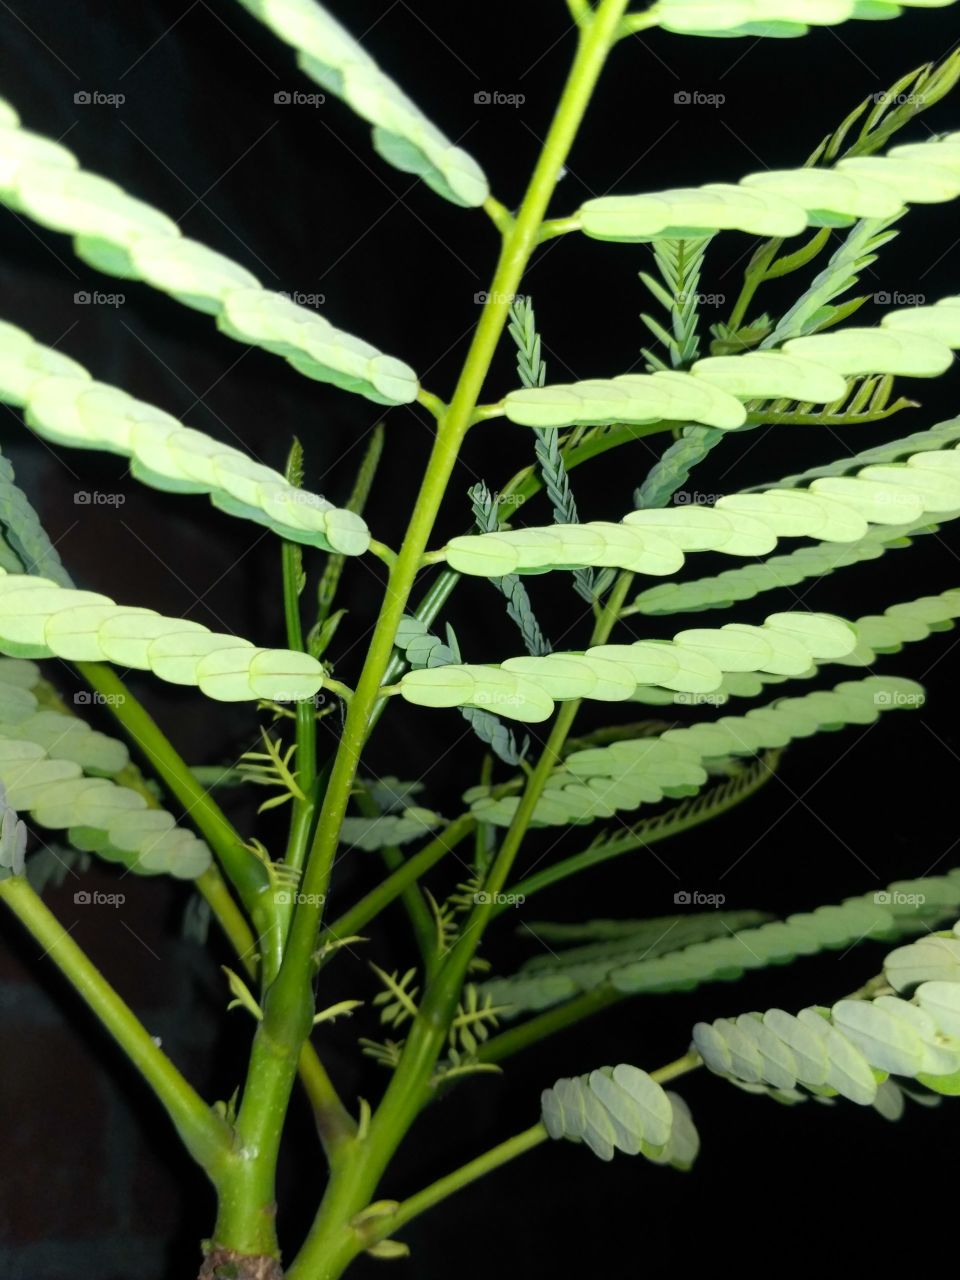 plant show in night sleeping leaf